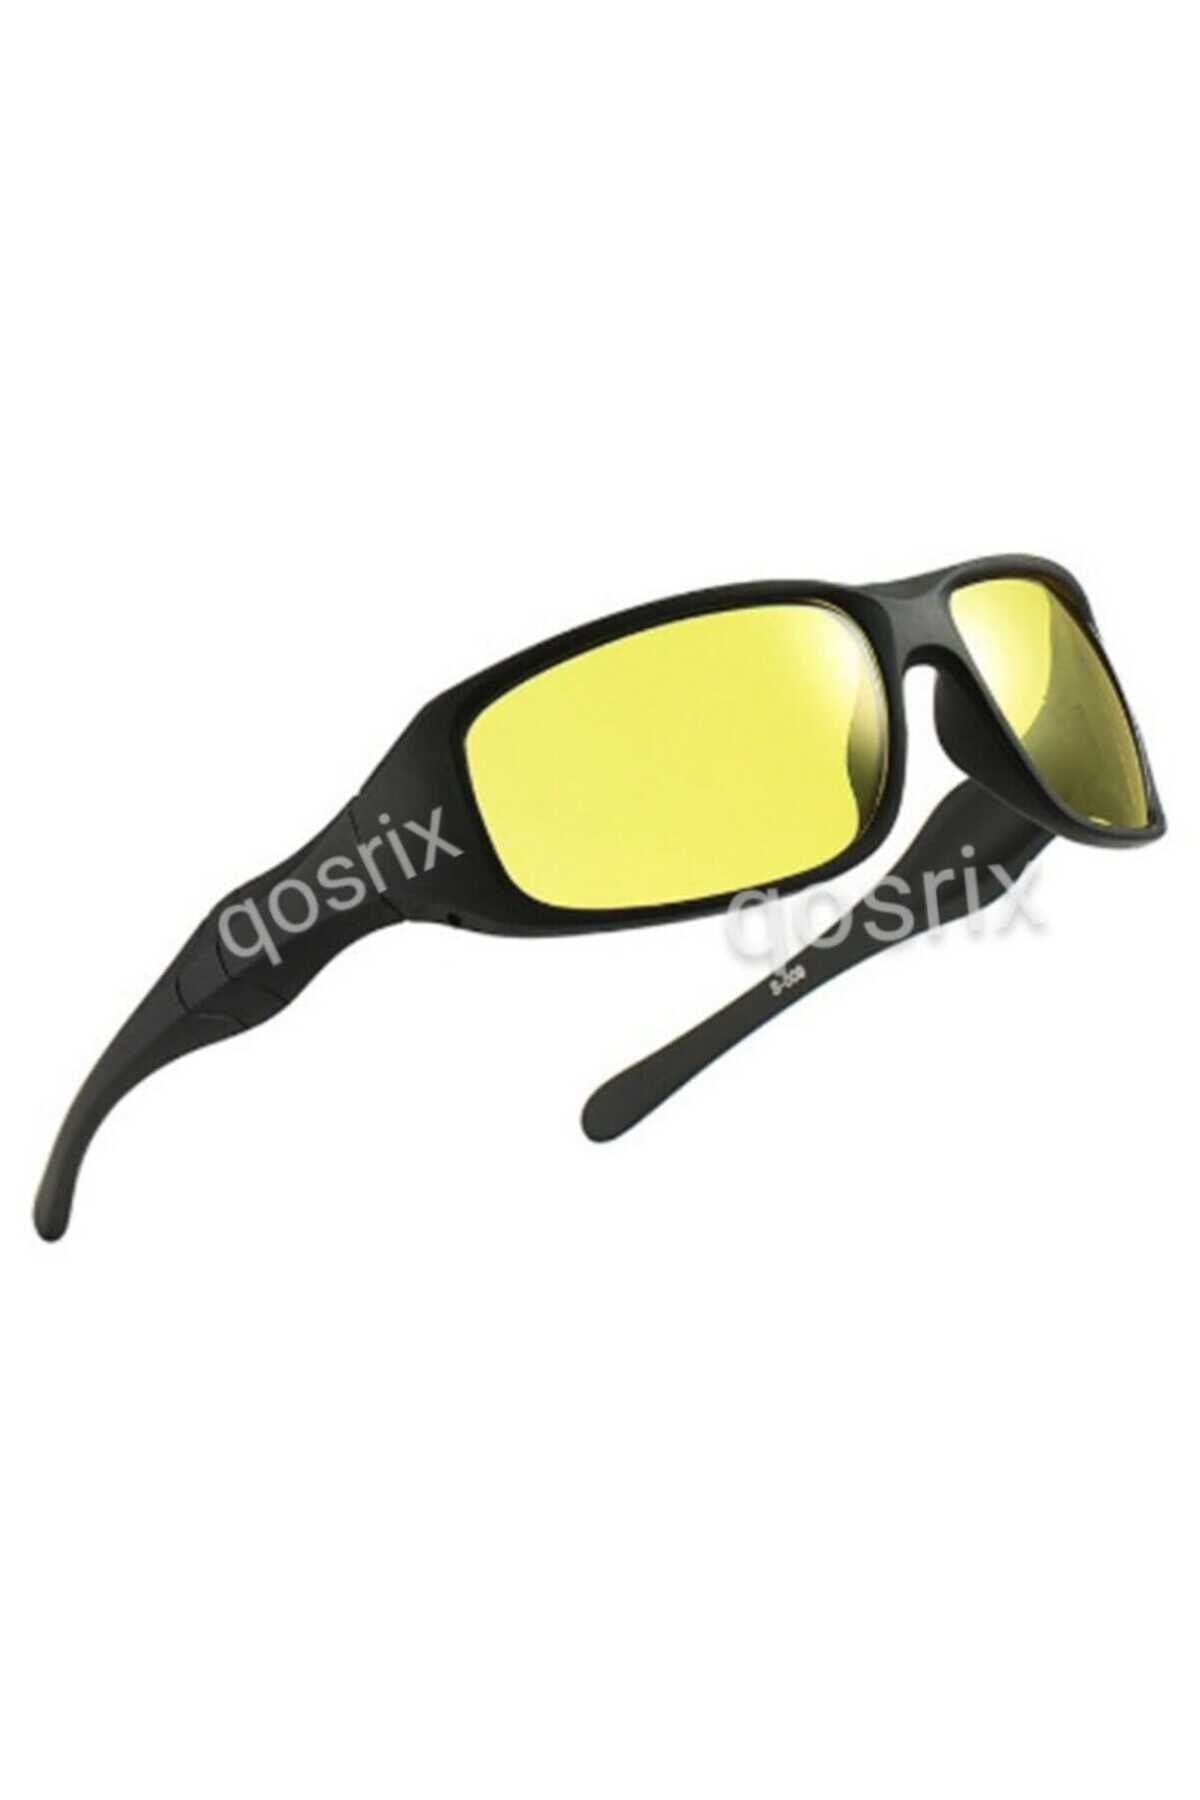 qosrix 2 Adet Anti Far Gece Görüş Gözlüğü Çerçeveli Gözlük Oto Araç Pratik Otomobil Araba Sürüş Için Gözlük